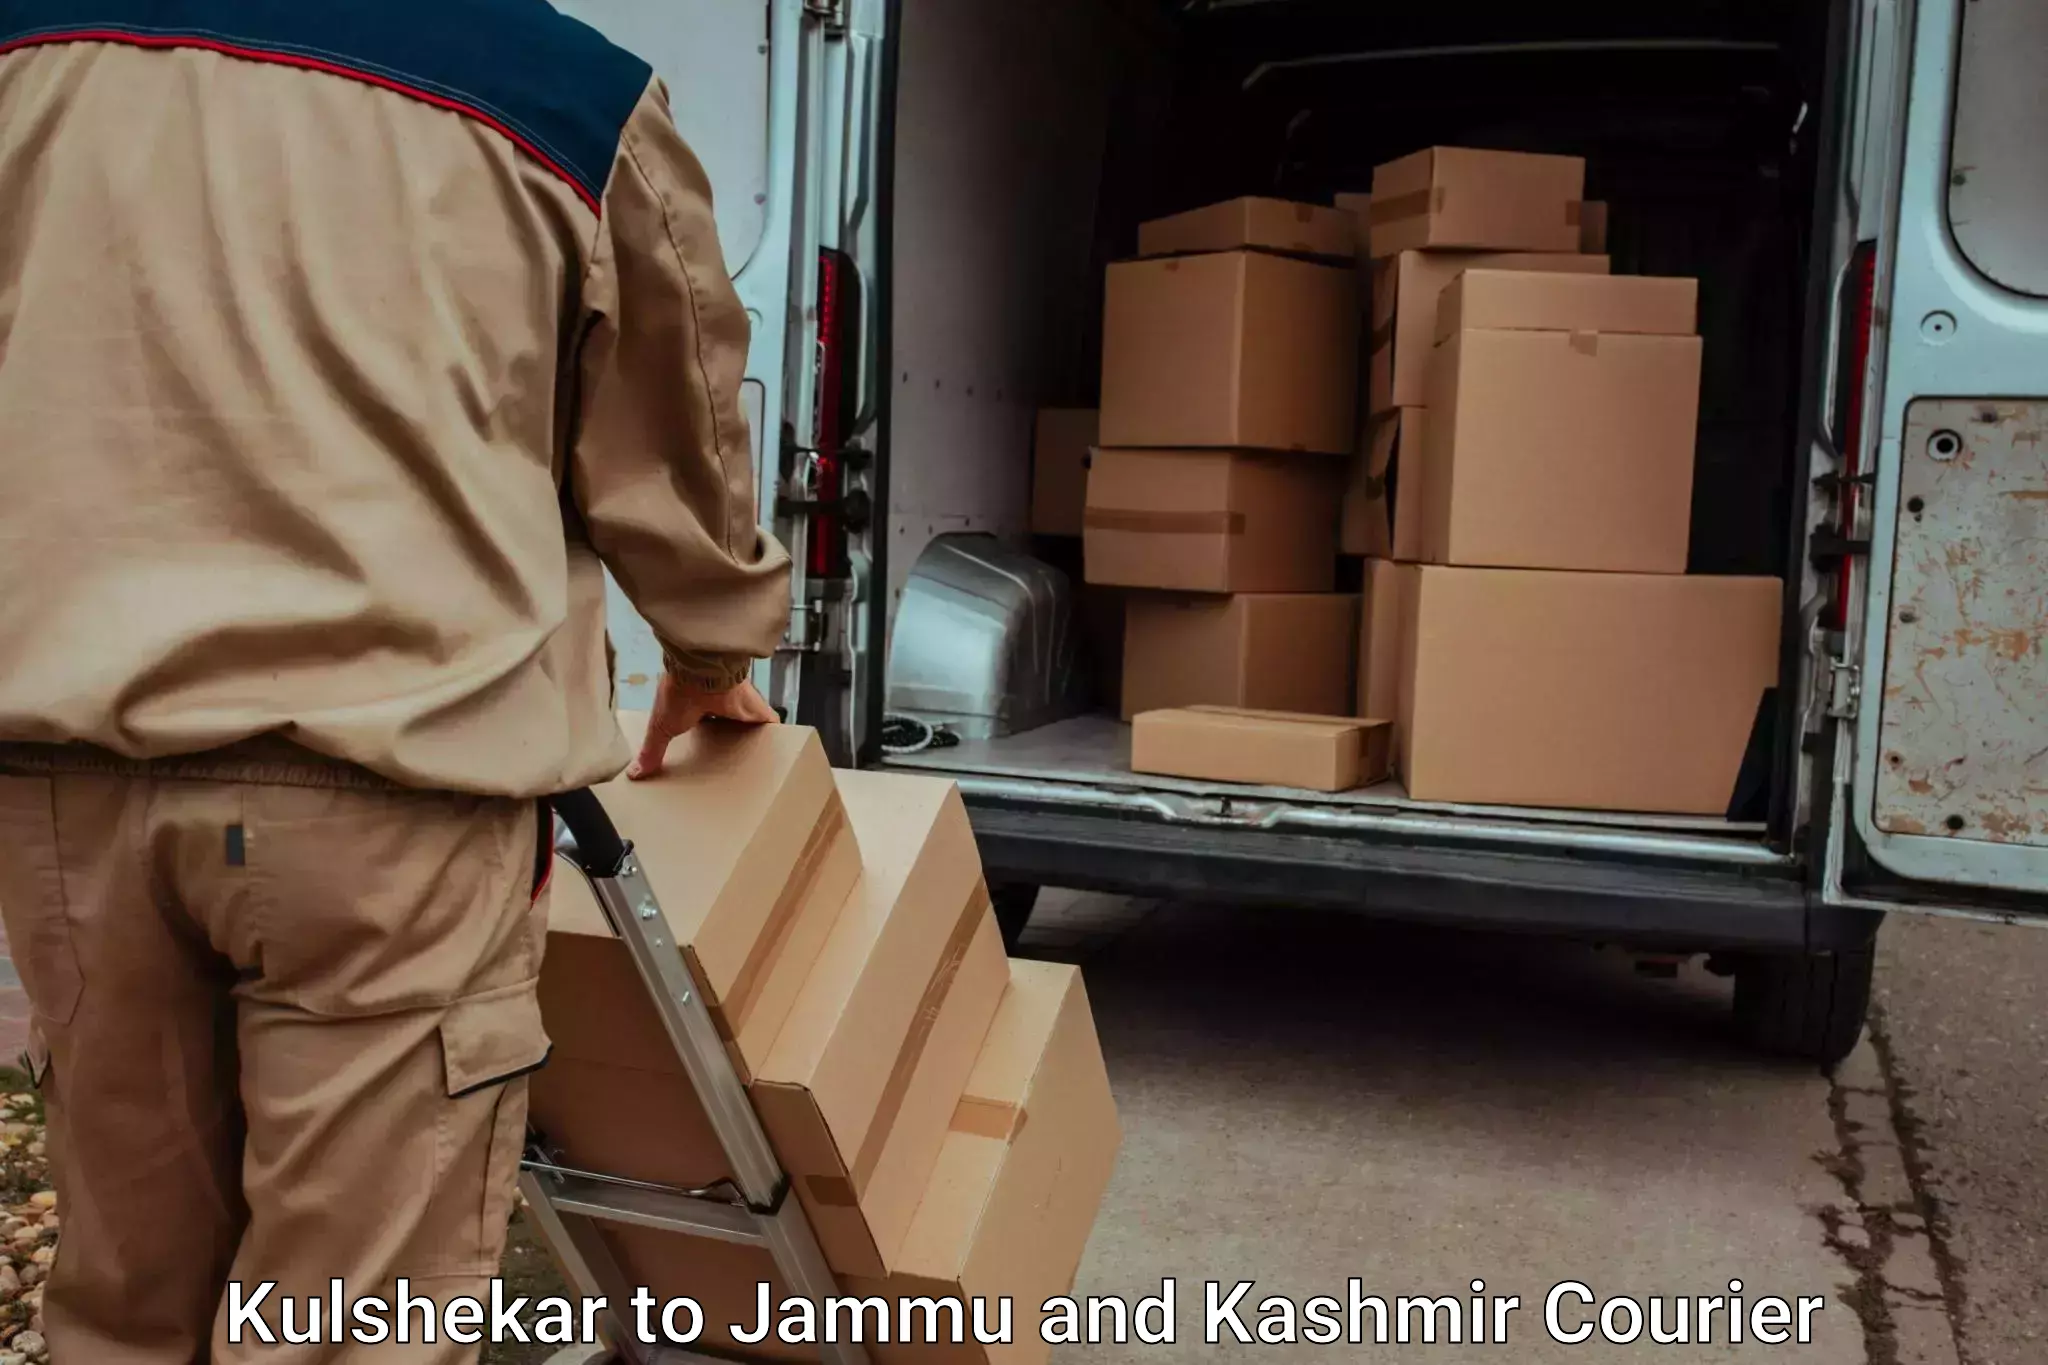 Furniture moving experts Kulshekar to Leh